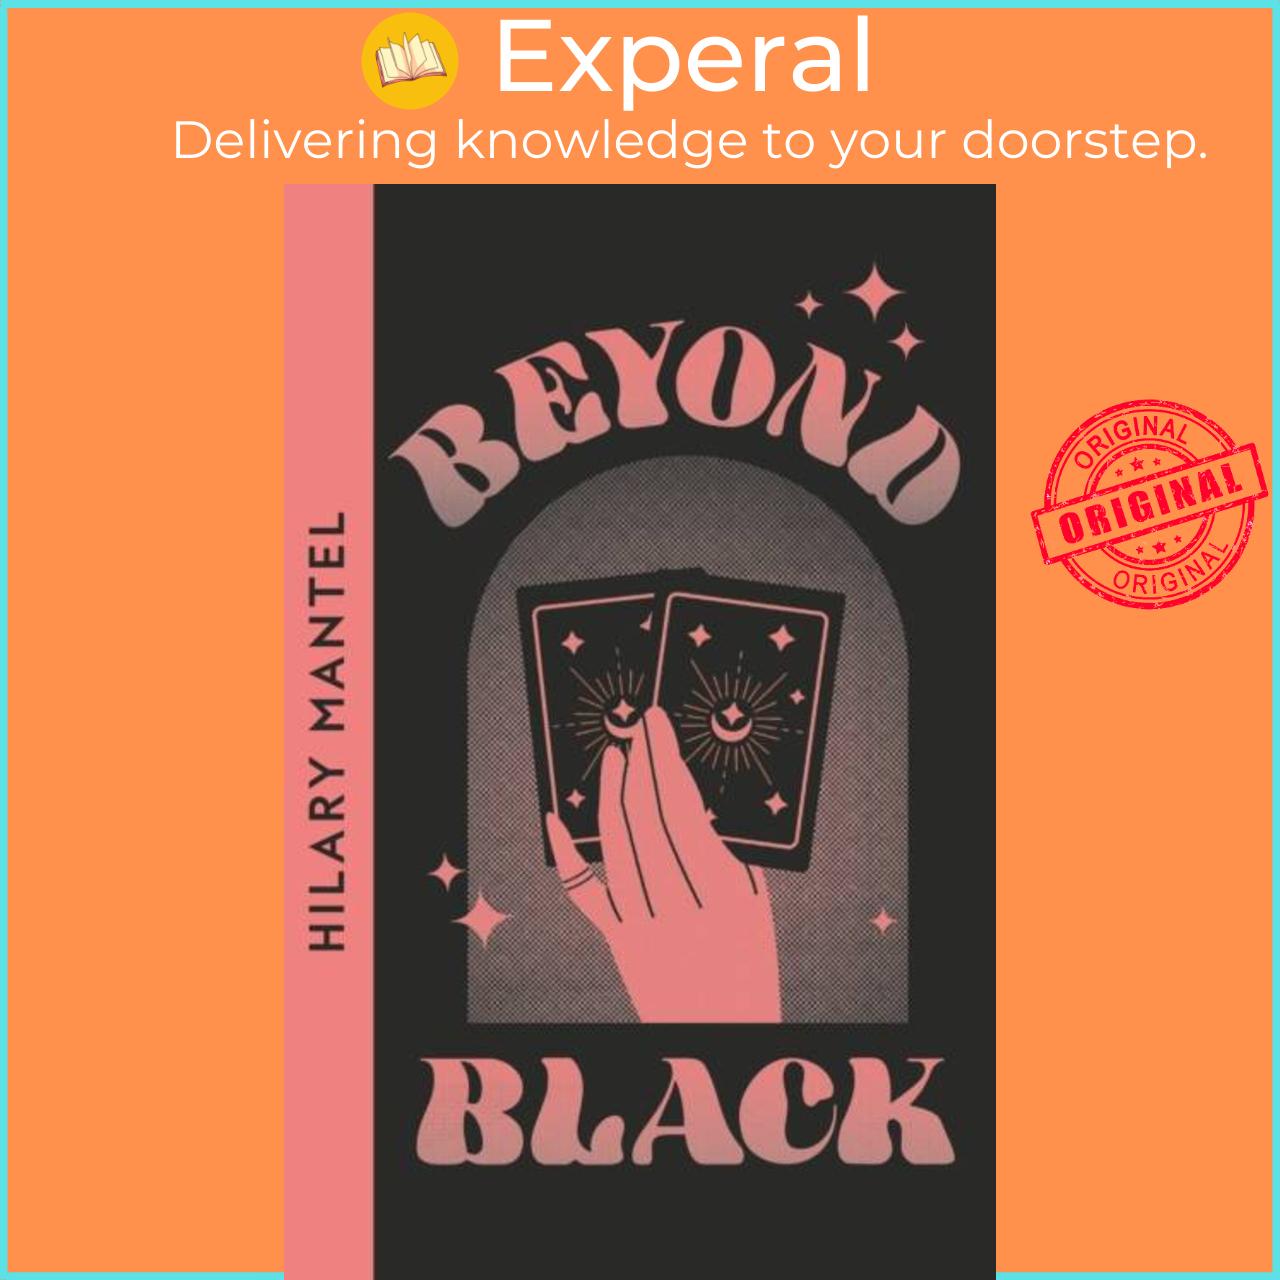 Sách - Beyond Black by Hilary Mantel (UK edition, paperback)